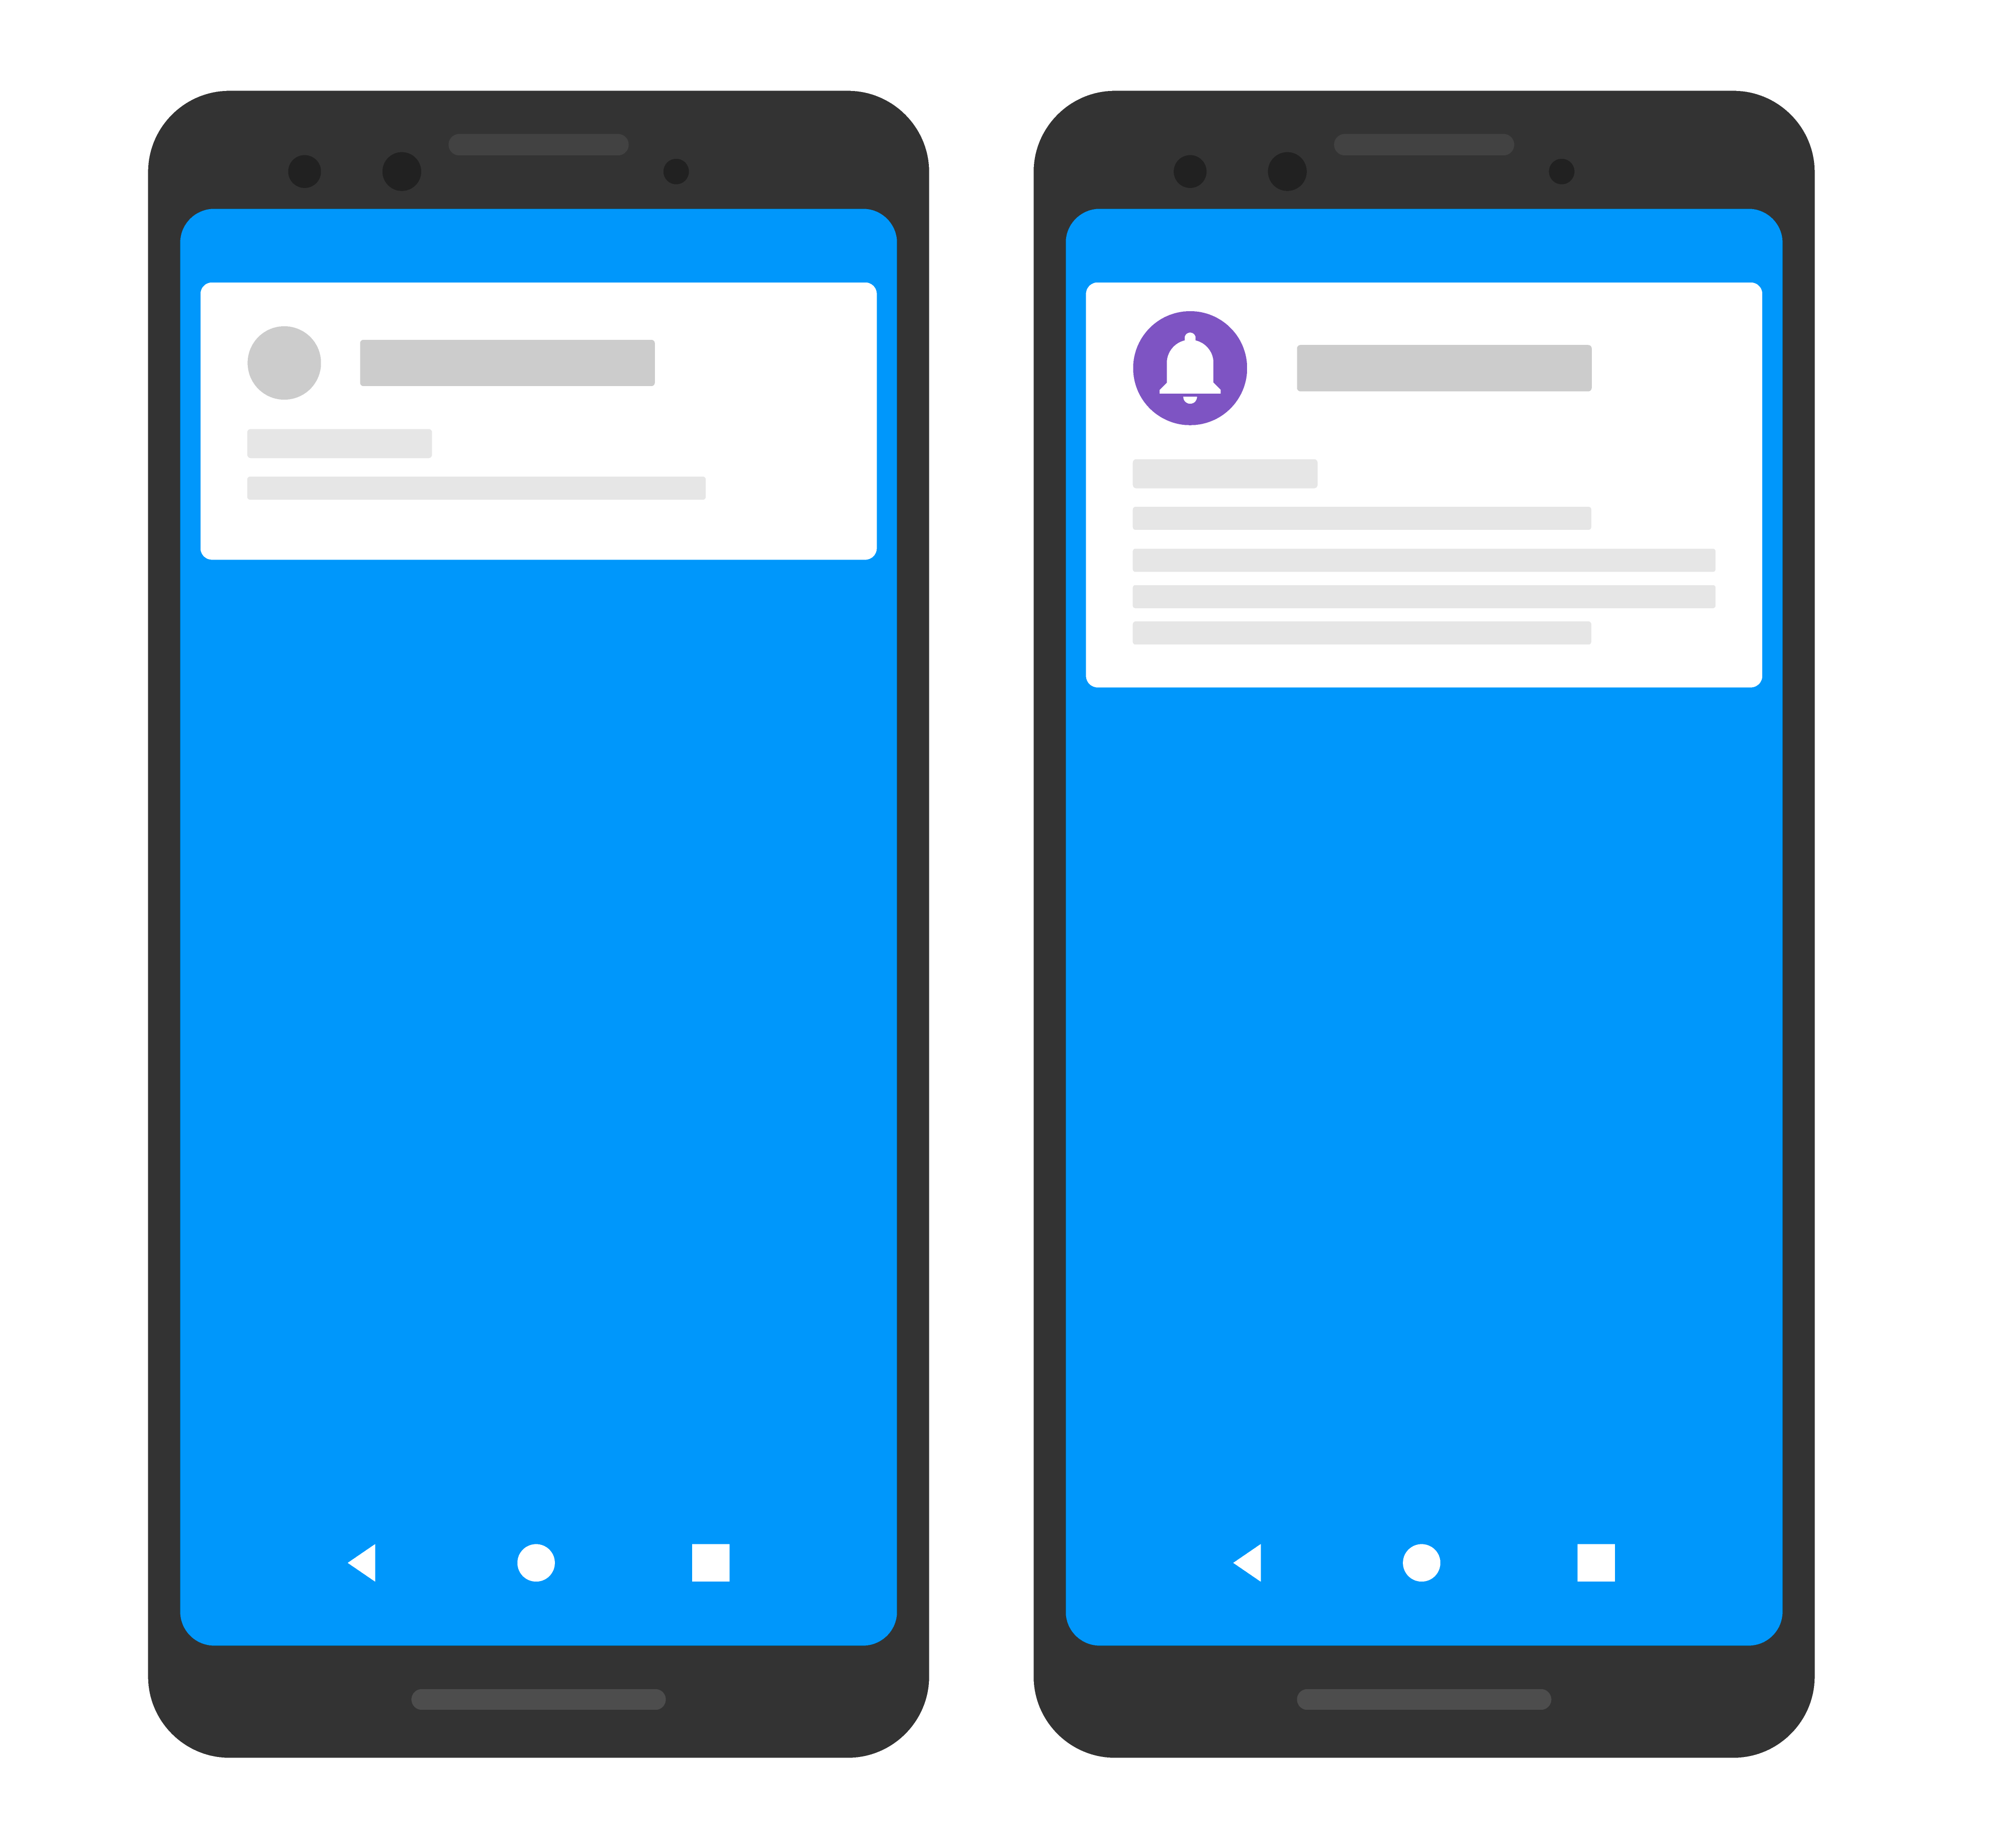 Gambar sederhana dari dua perangkat, dengan satu menampilkan ikon dan warna khusus